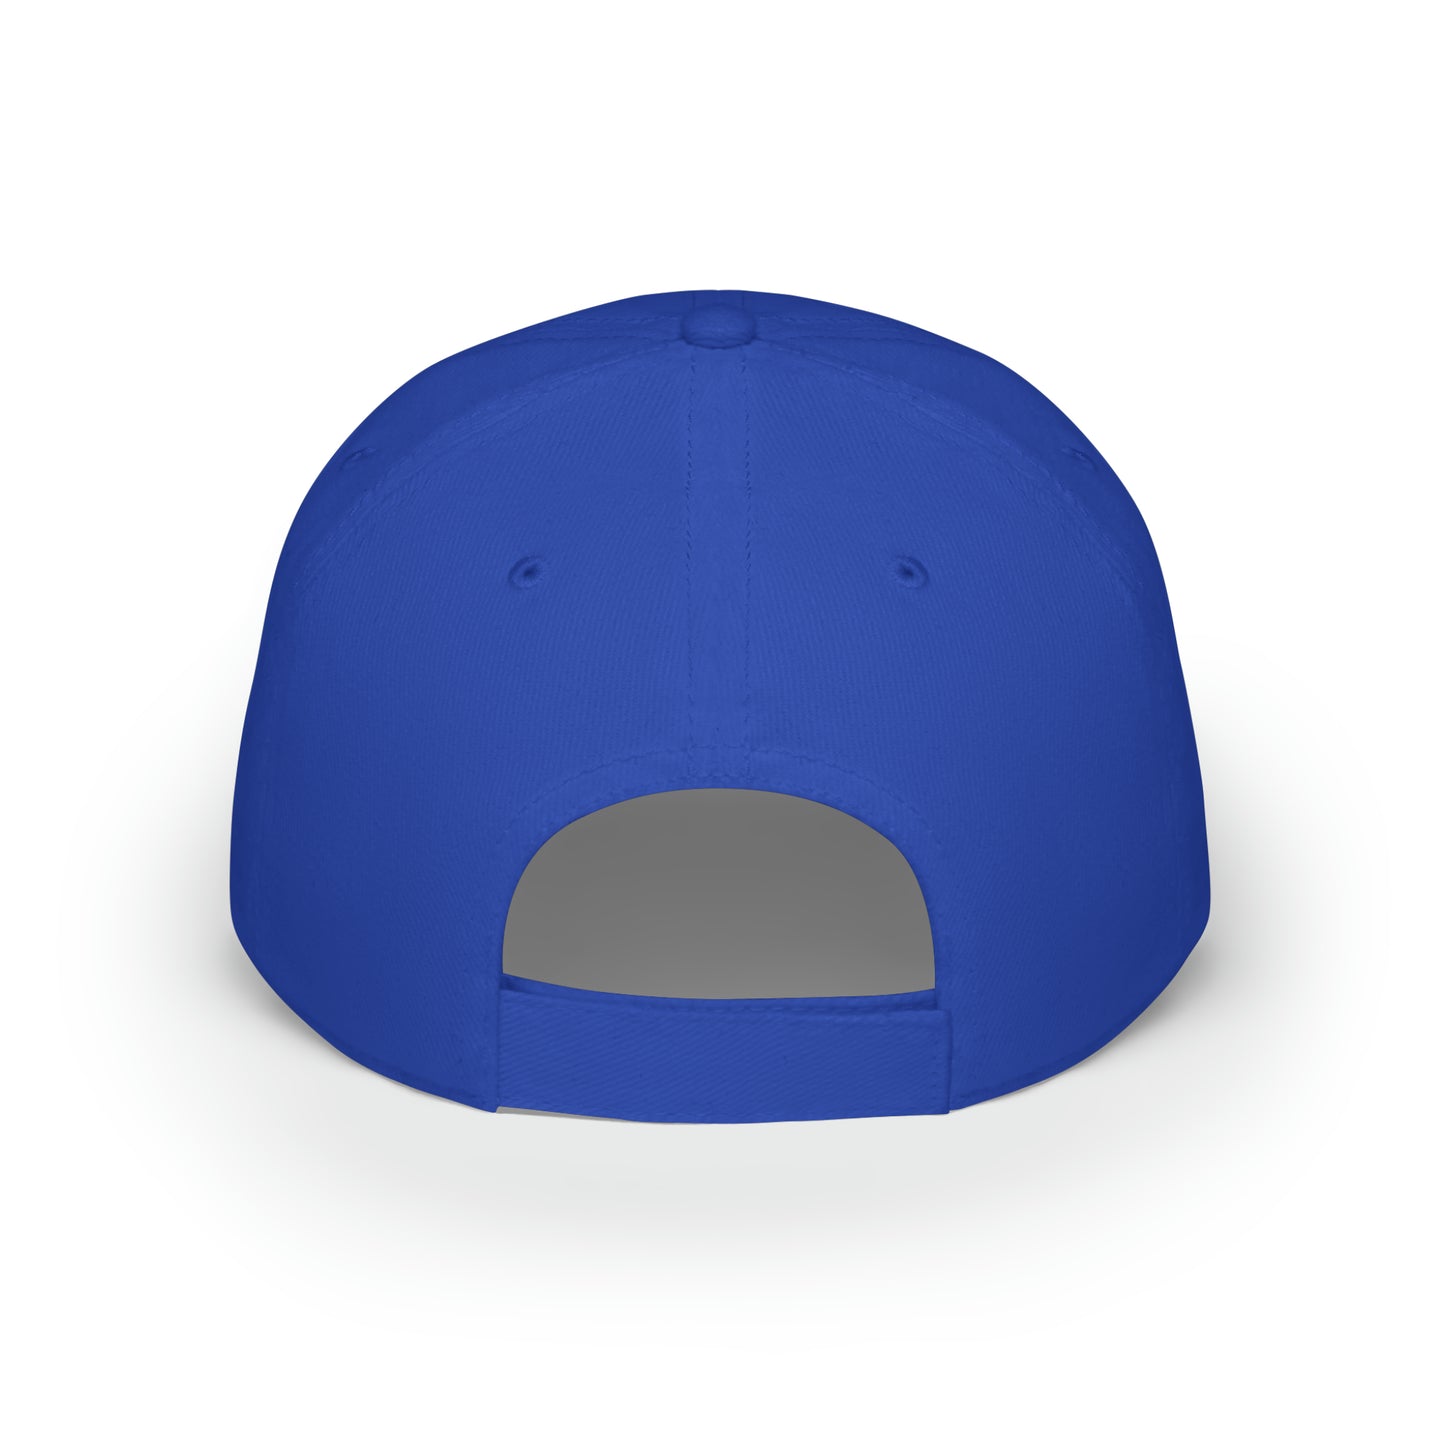 Low Profile Baseball Cap